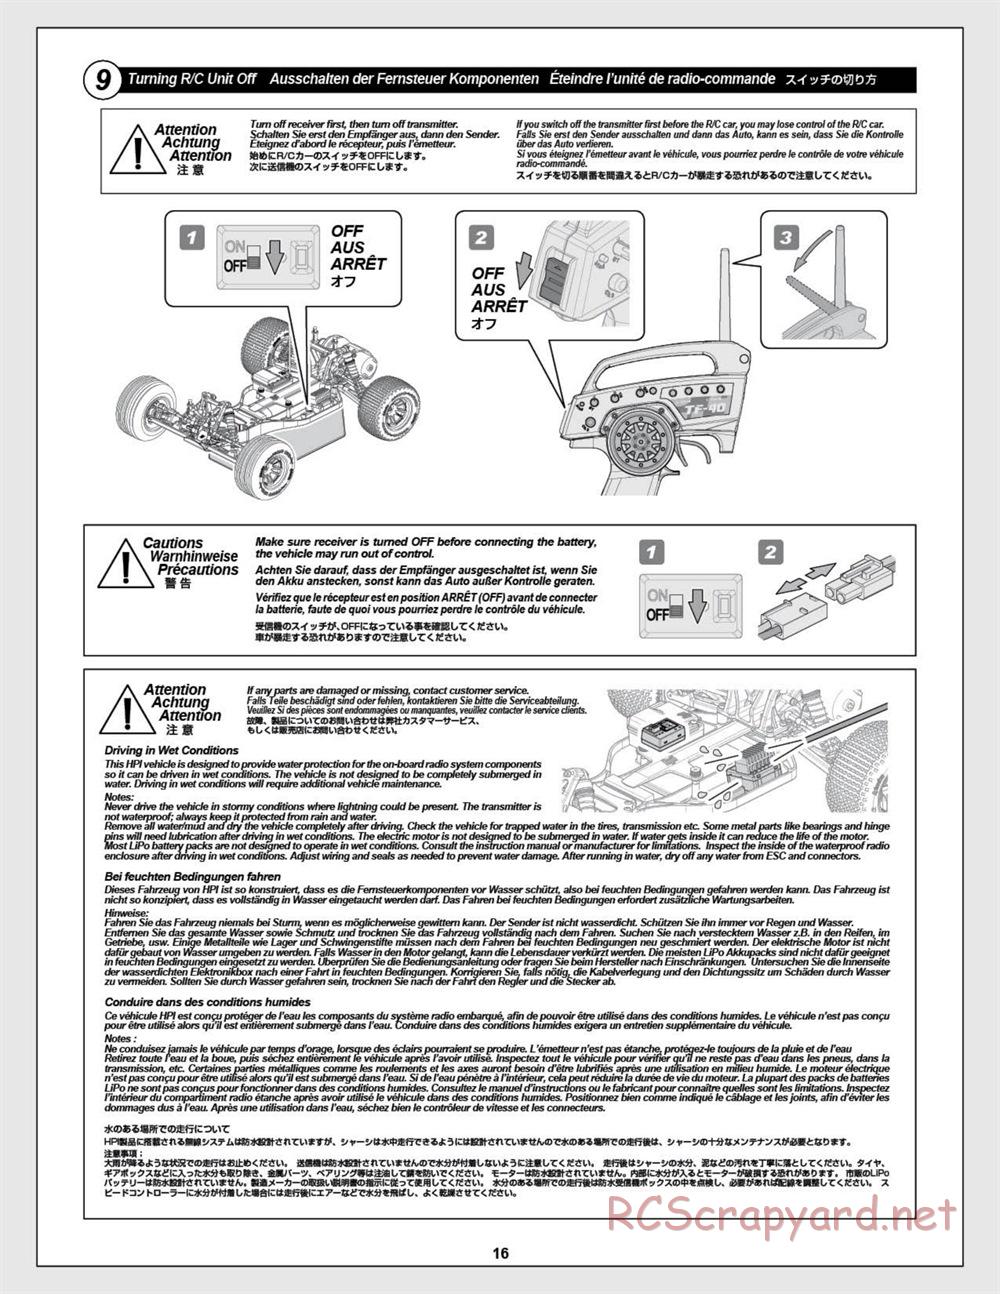 HPI - E-Firestorm-10T - Manual - Page 16